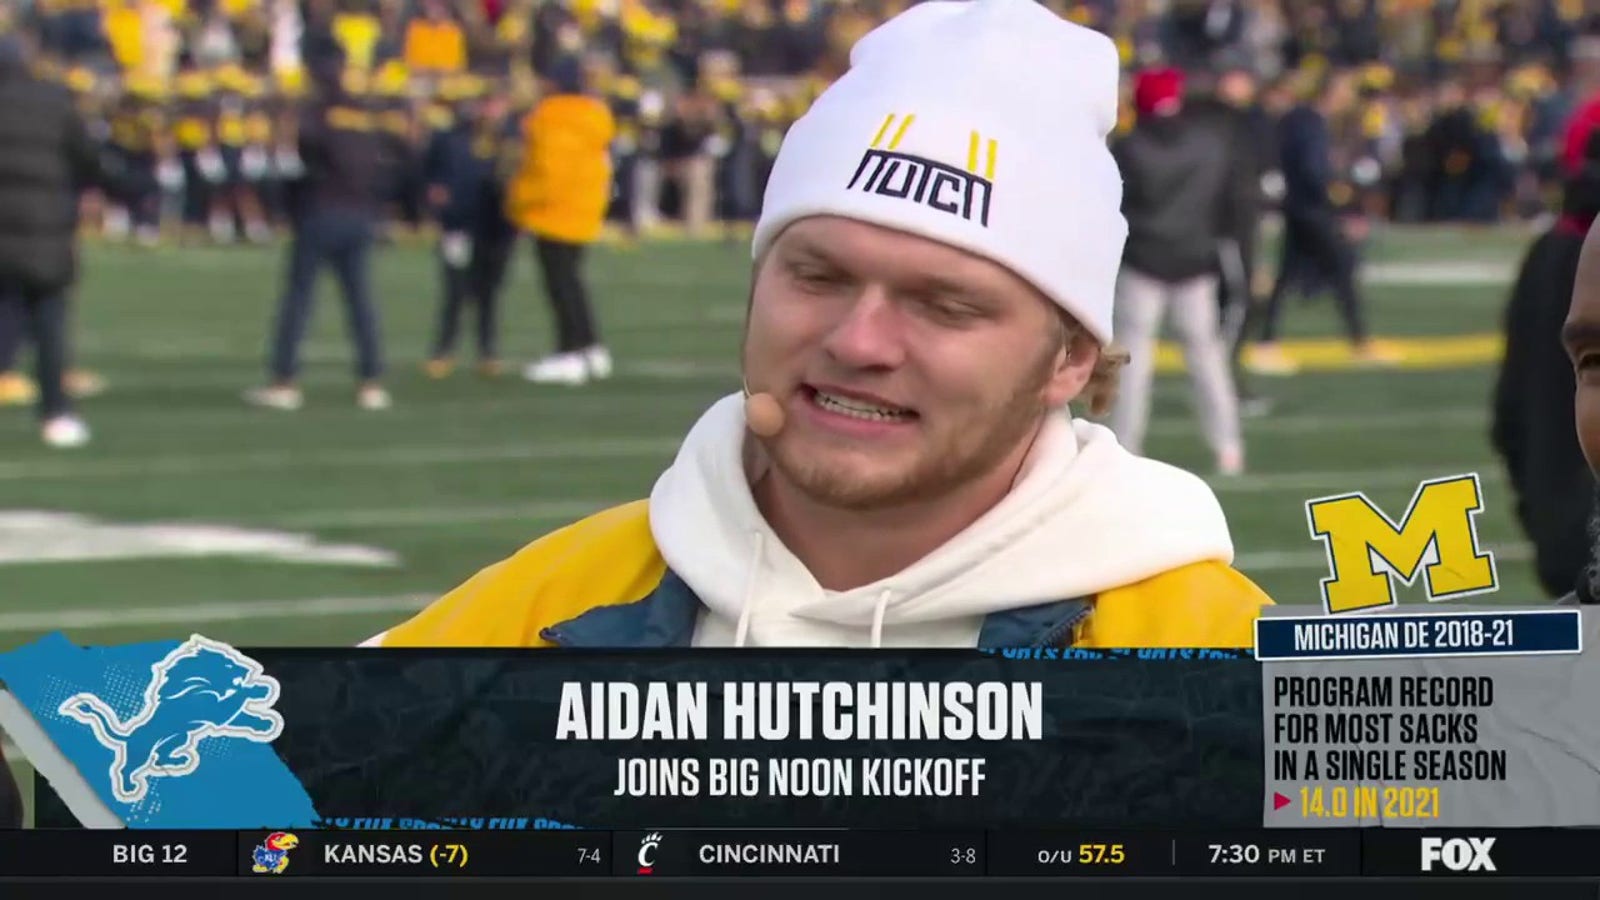 Aidan Hutchinson reflects on his time at Michigan